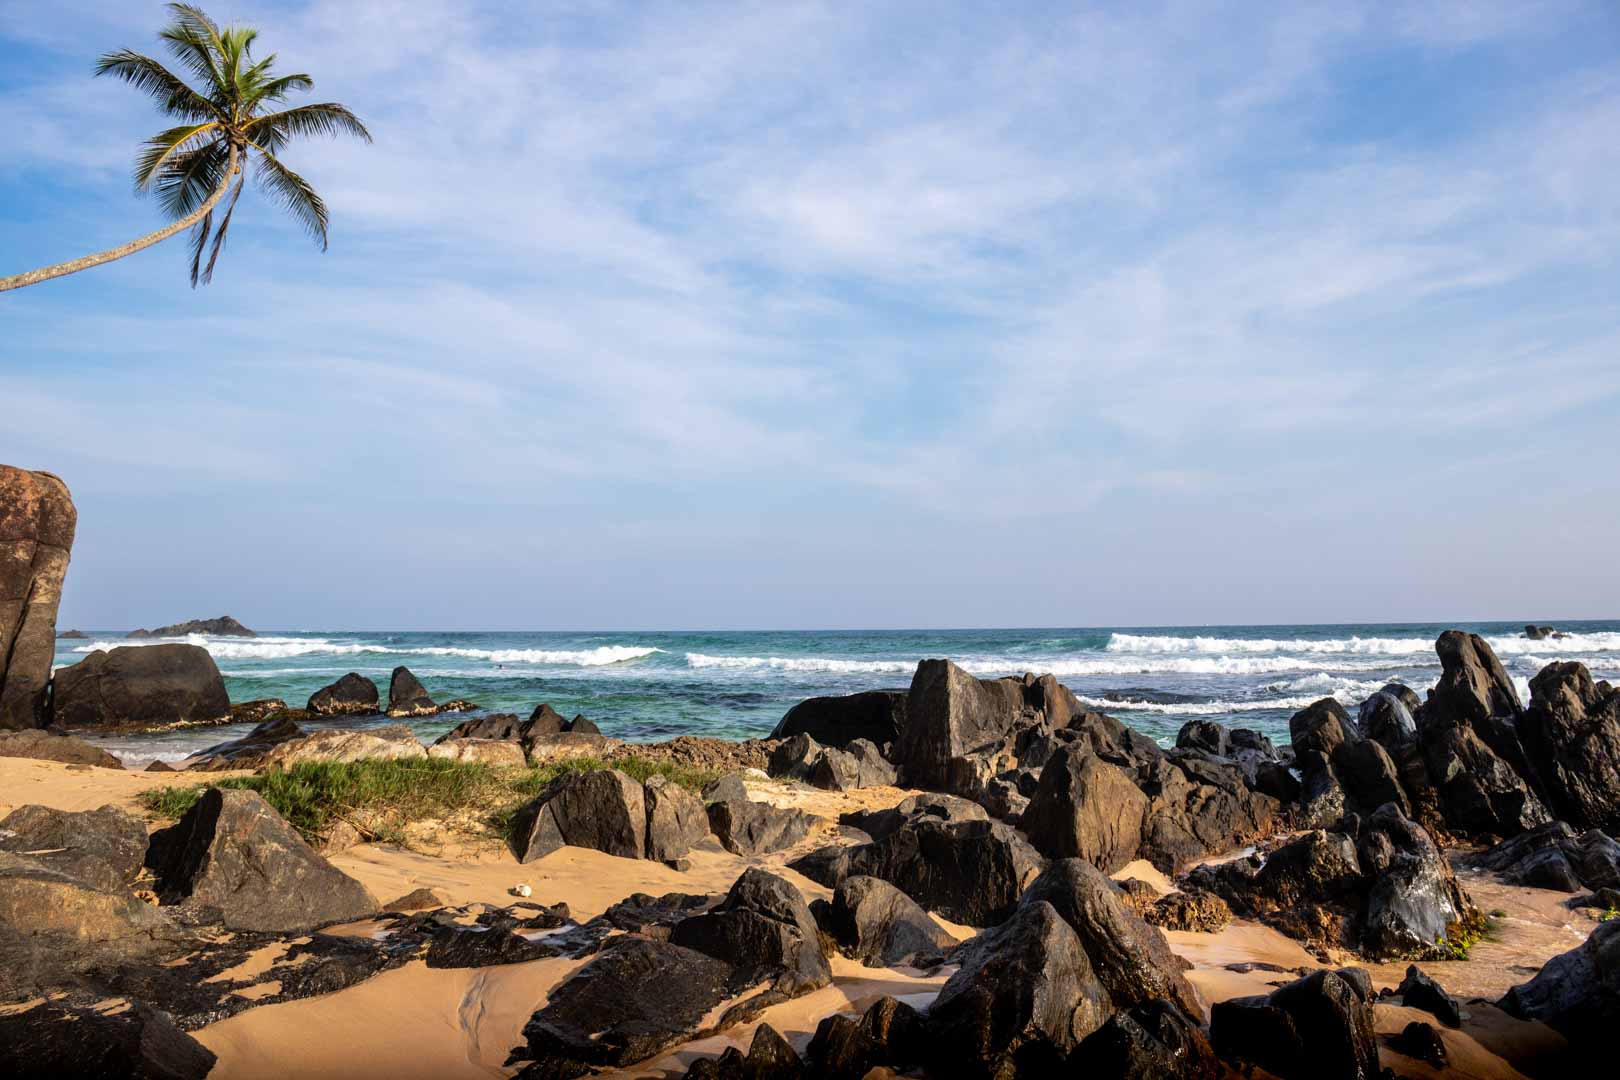 Mirissa Beach in Sri Lanka